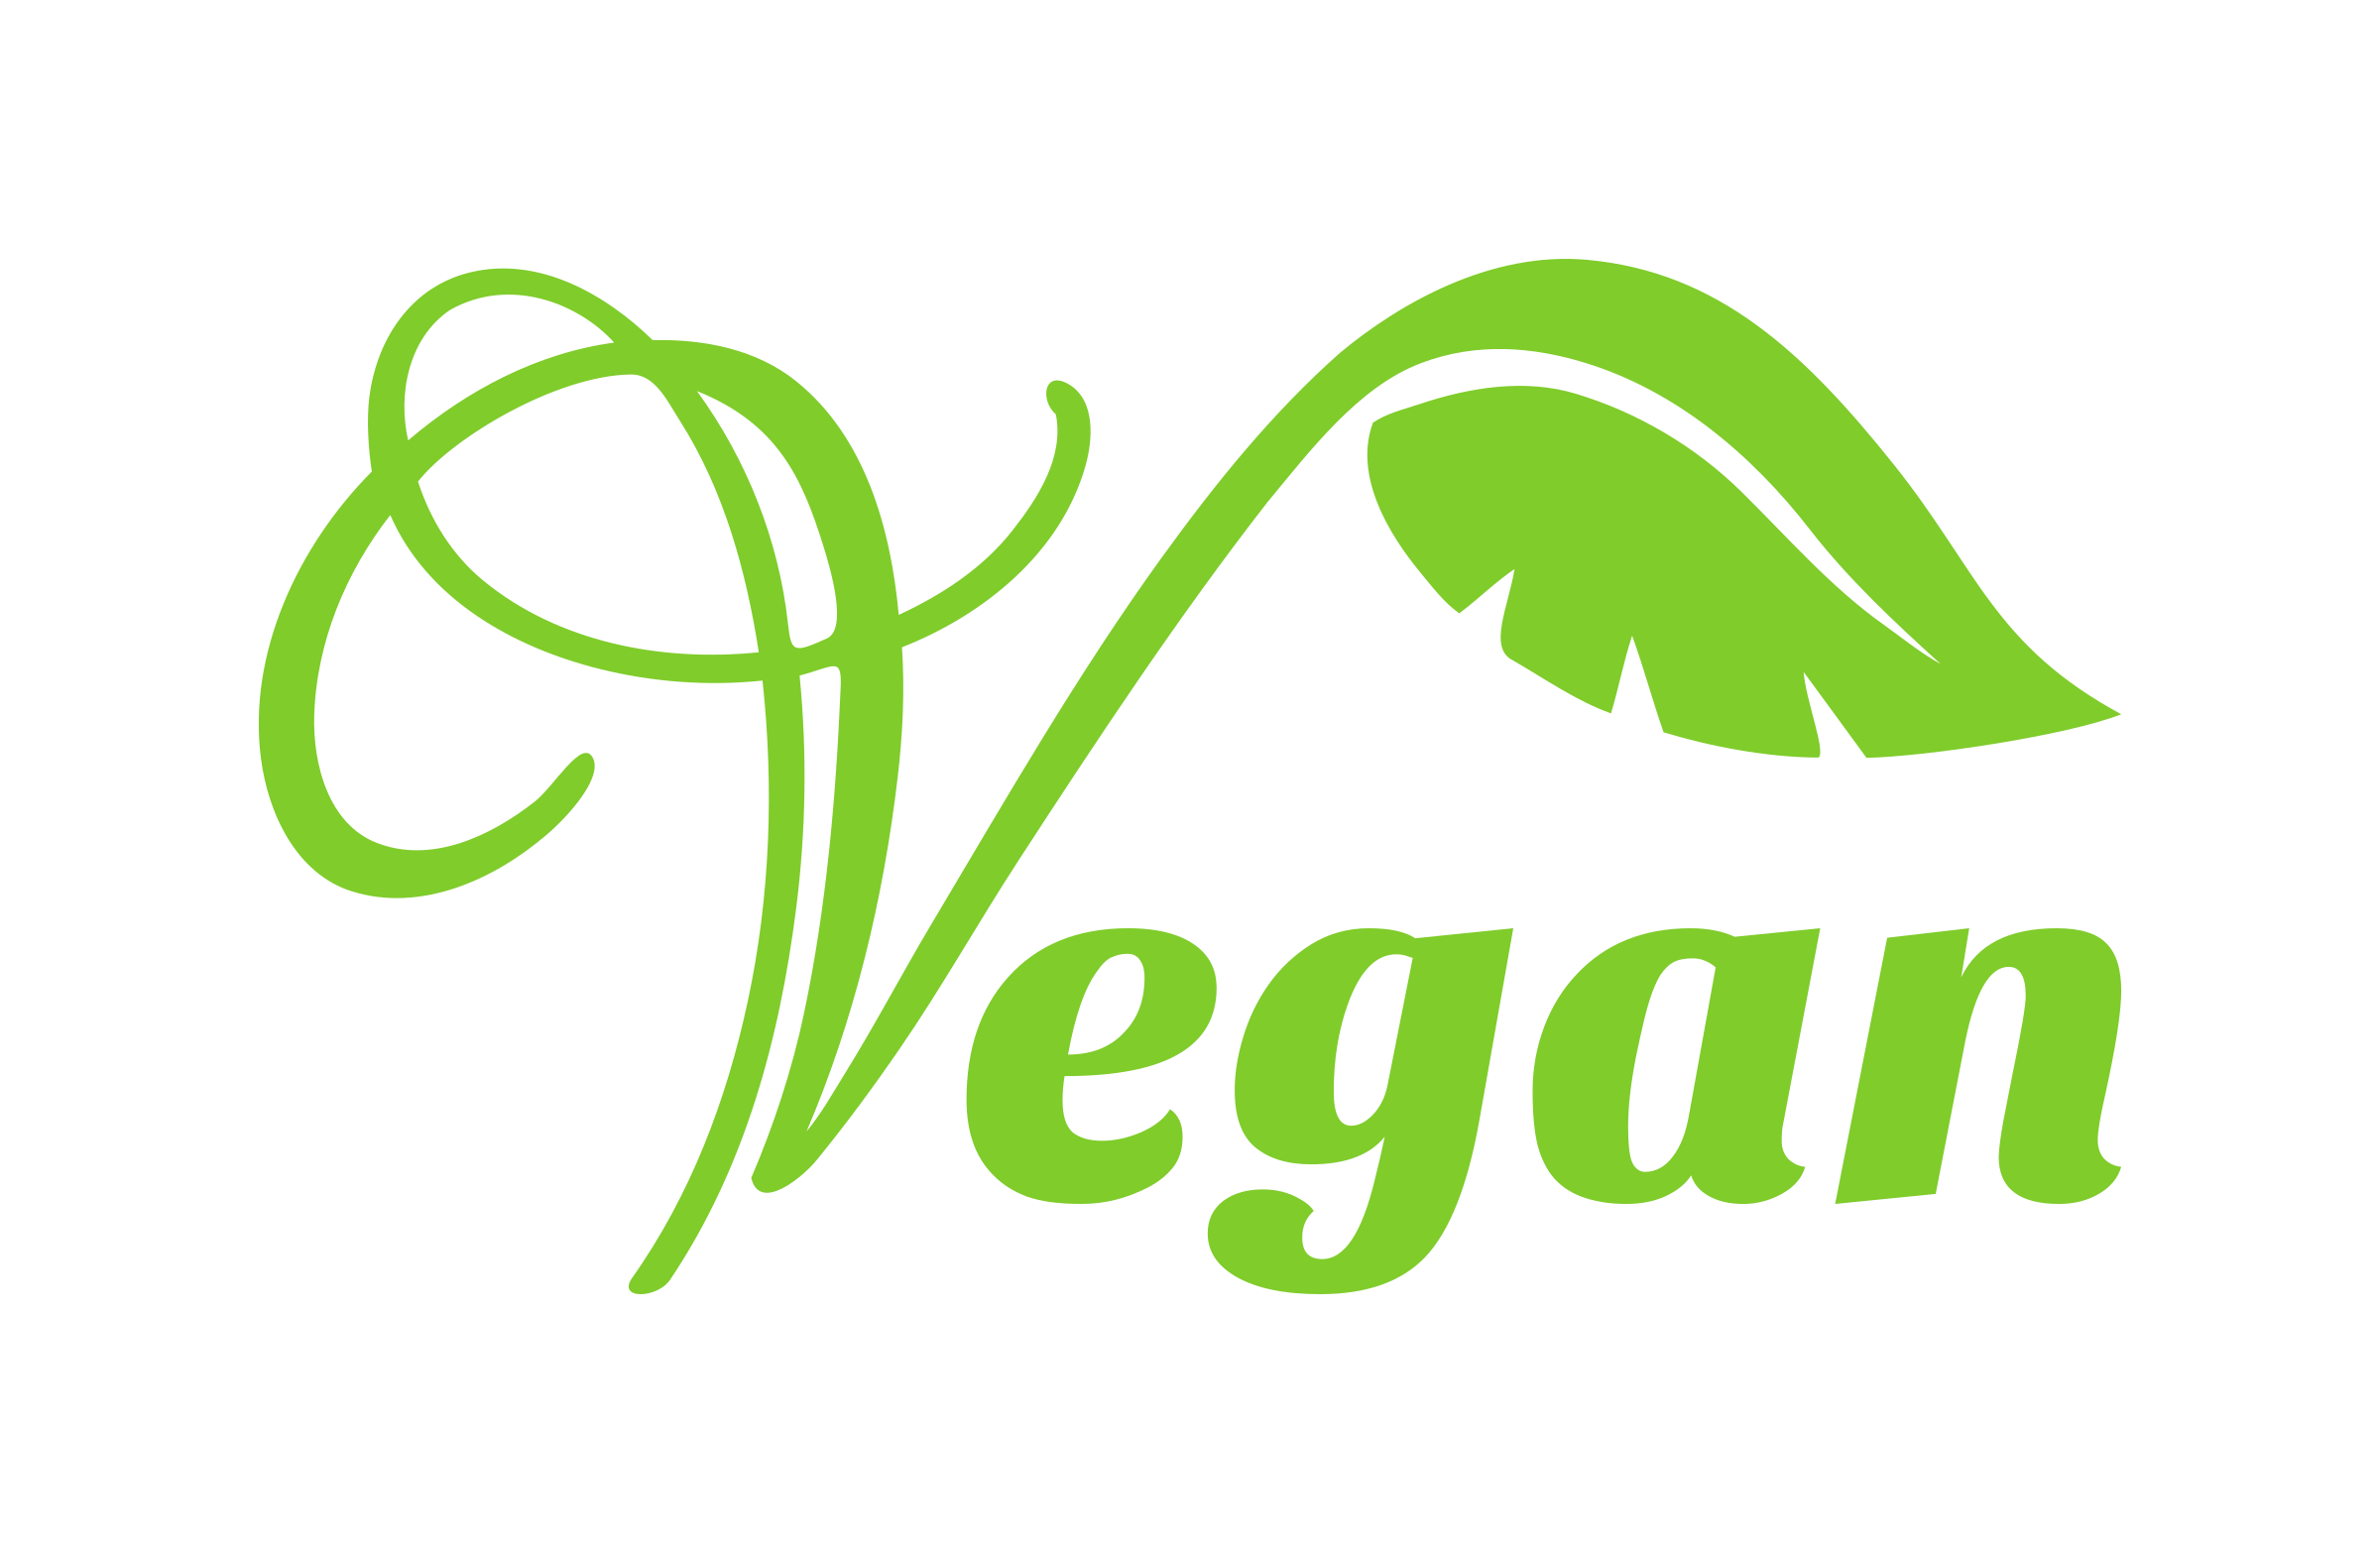 Grains vegan